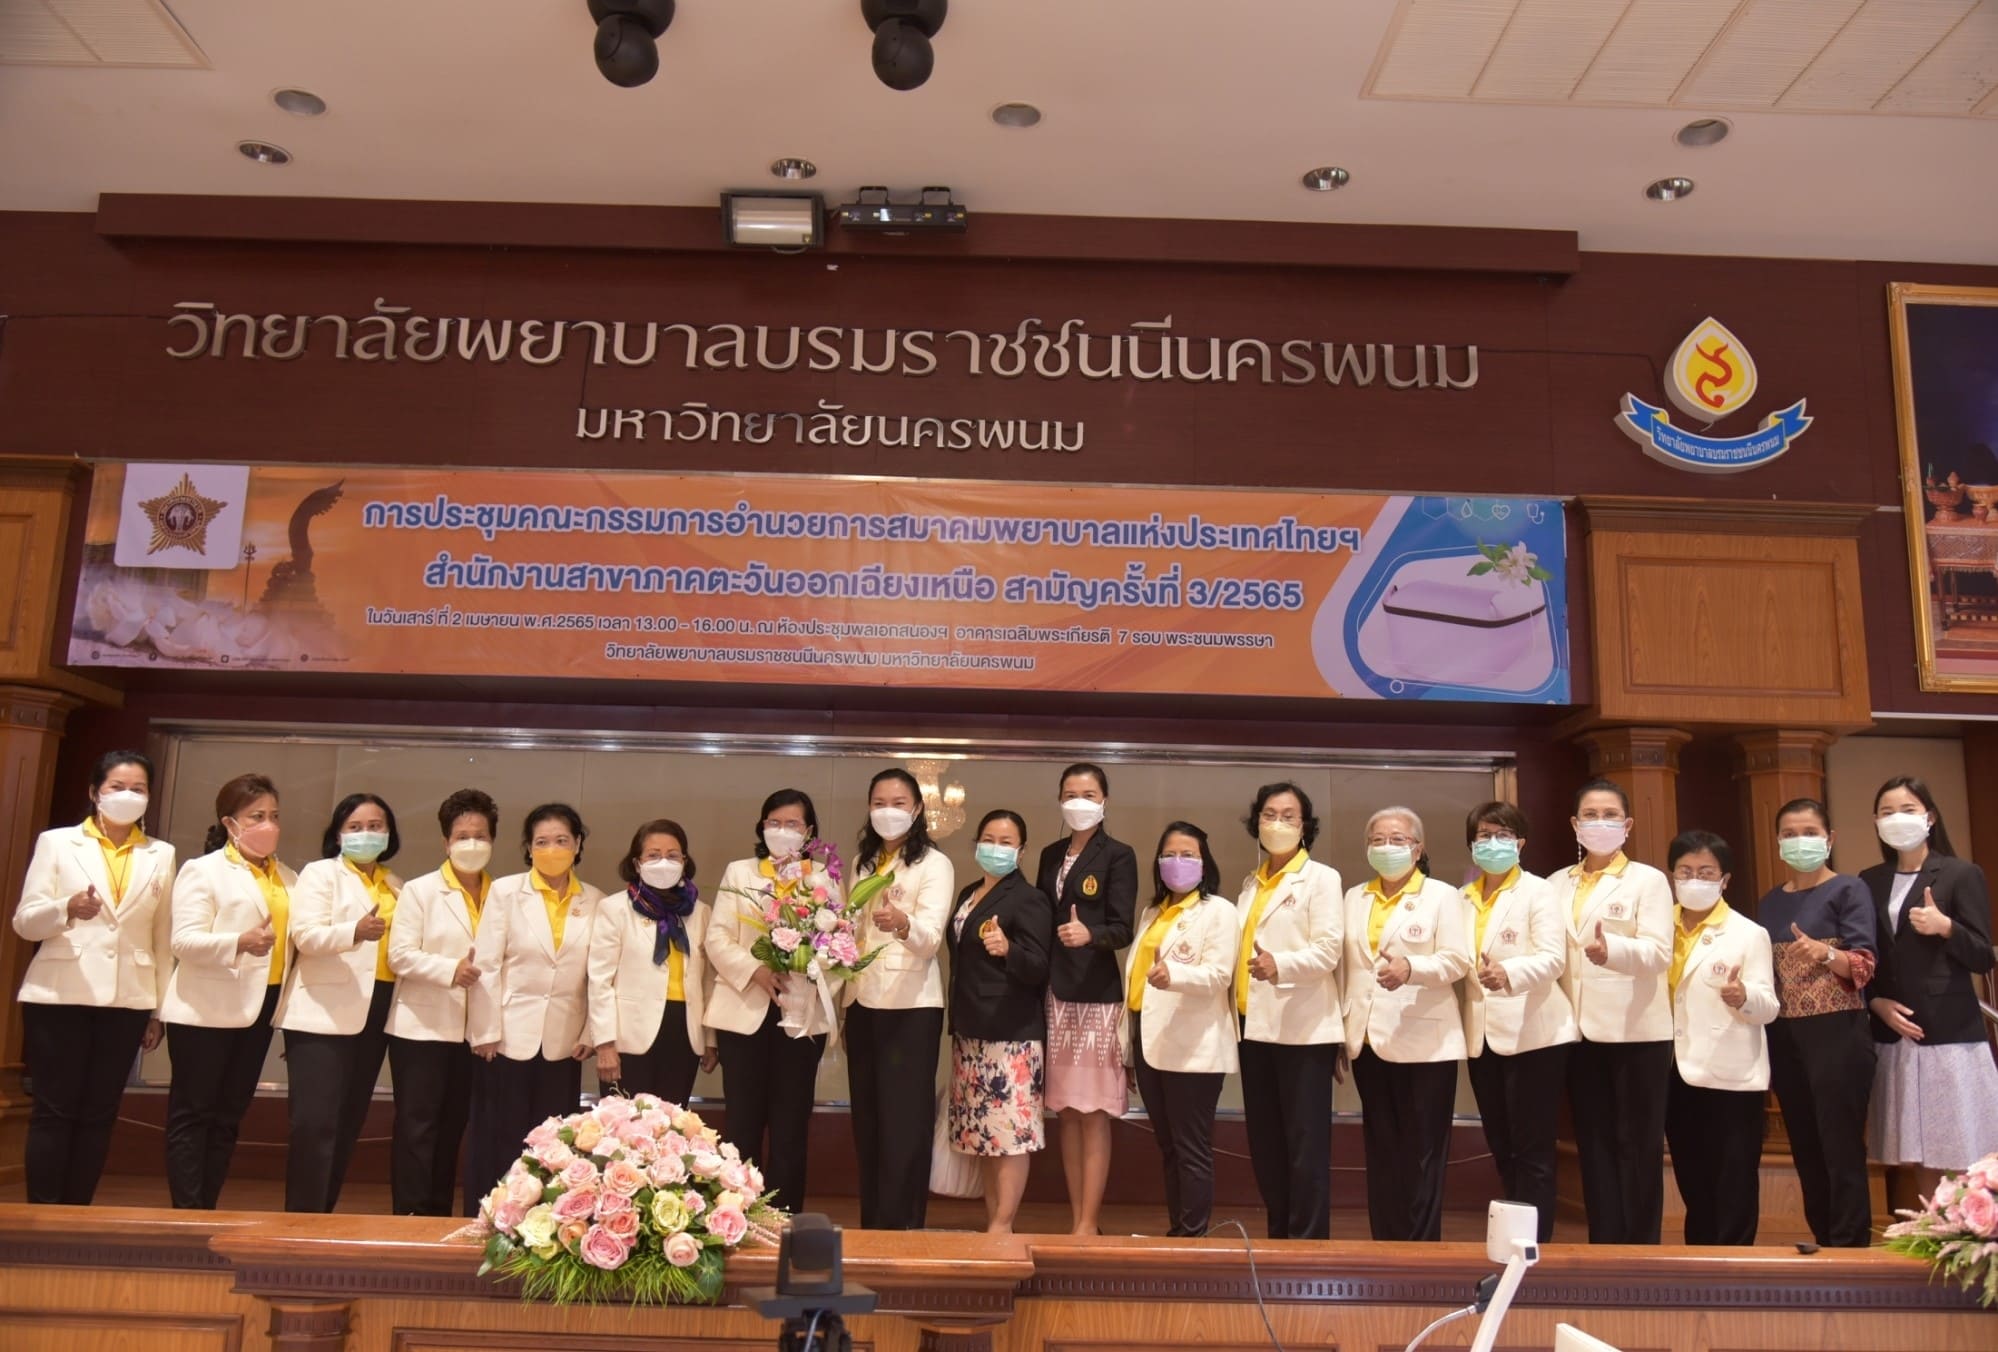 วพบ.นครพนม เป็นเจ้าภาพจัดการประชุมคณะกรรมการอำนวยการ สมาคมพยาบาลแห่งประเทศไทย สำนักงานสาขาภาคตะวันออกเฉียงเหนือ สามัญครั้งที่ 3/2565